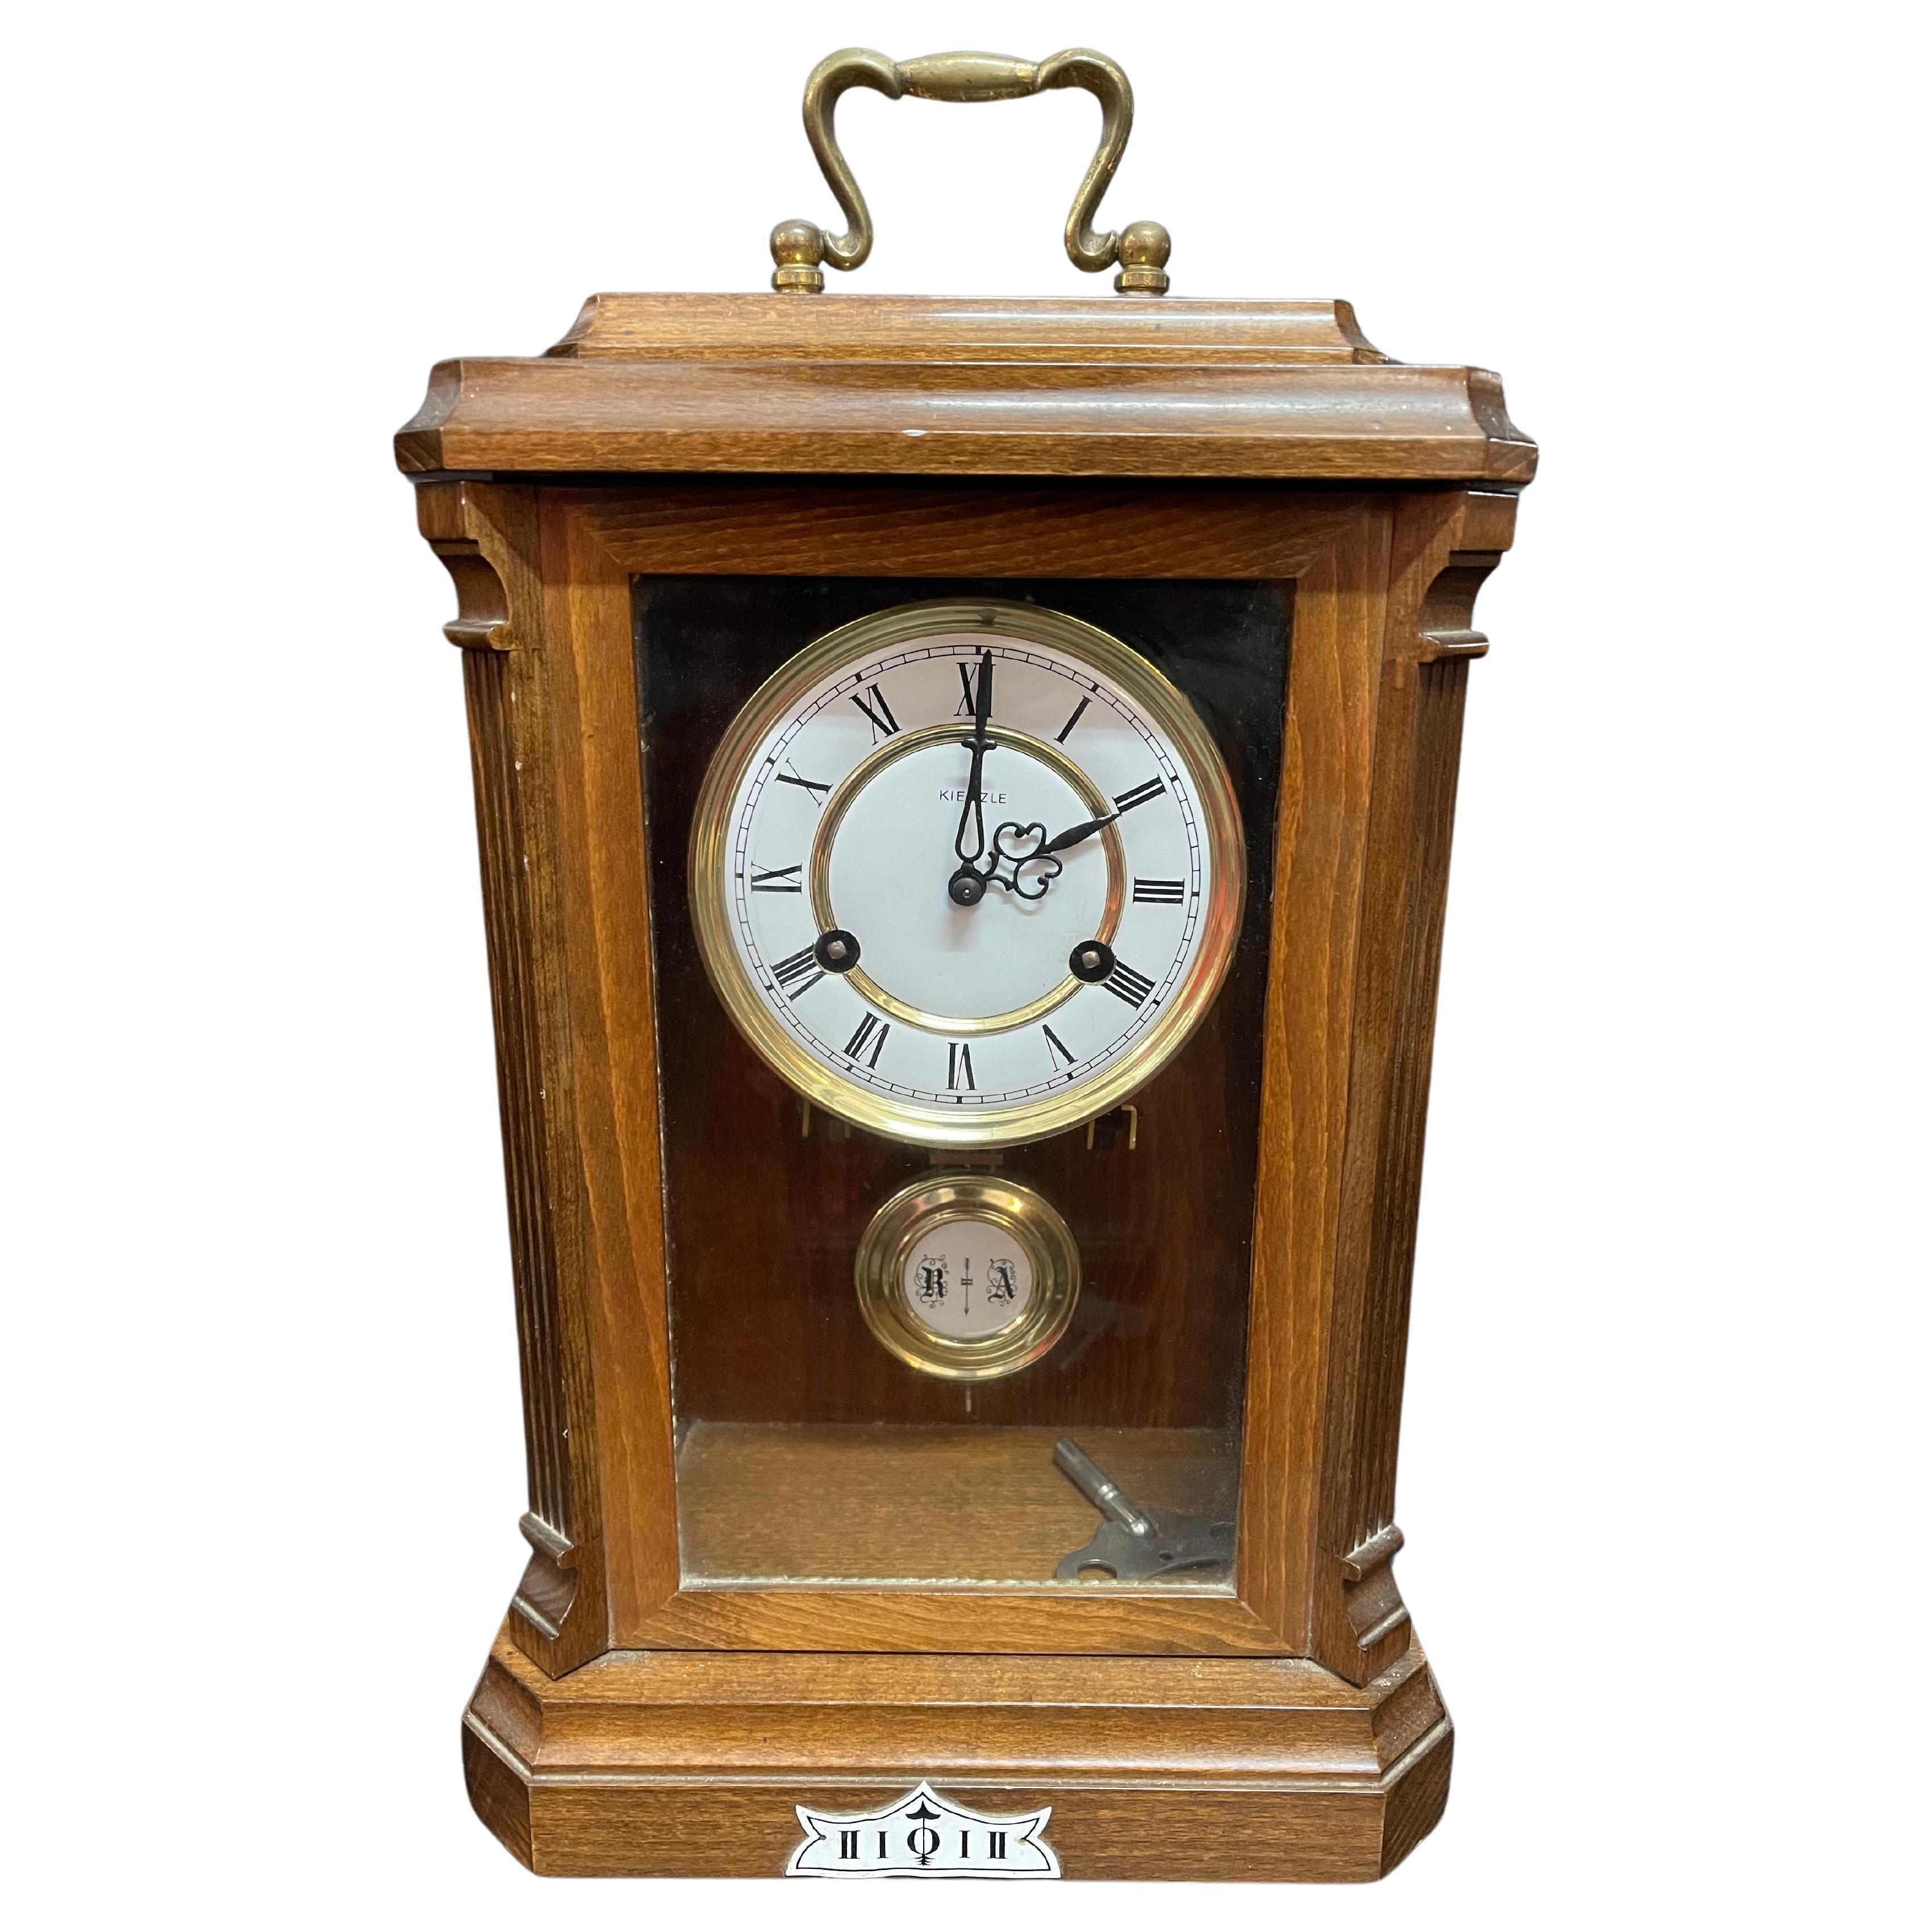 Antique table pendulum clock